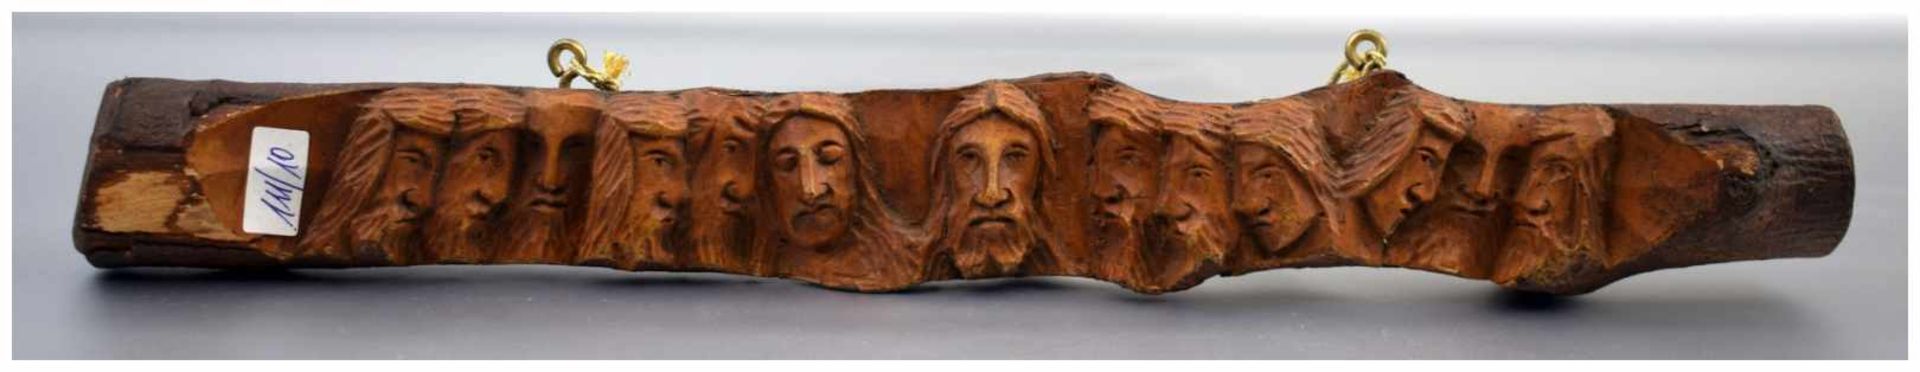 Das letzte Abendmahl aus Ast geschnitzt, Darstellung Jesus mit den zwölf Aposteln, H 5 cm, L 42 cm